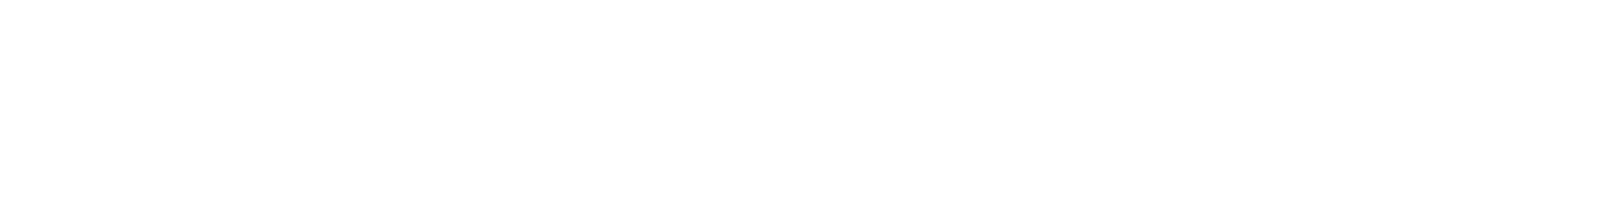 McKesson logo grand pour les fonds sombres (PNG transparent)